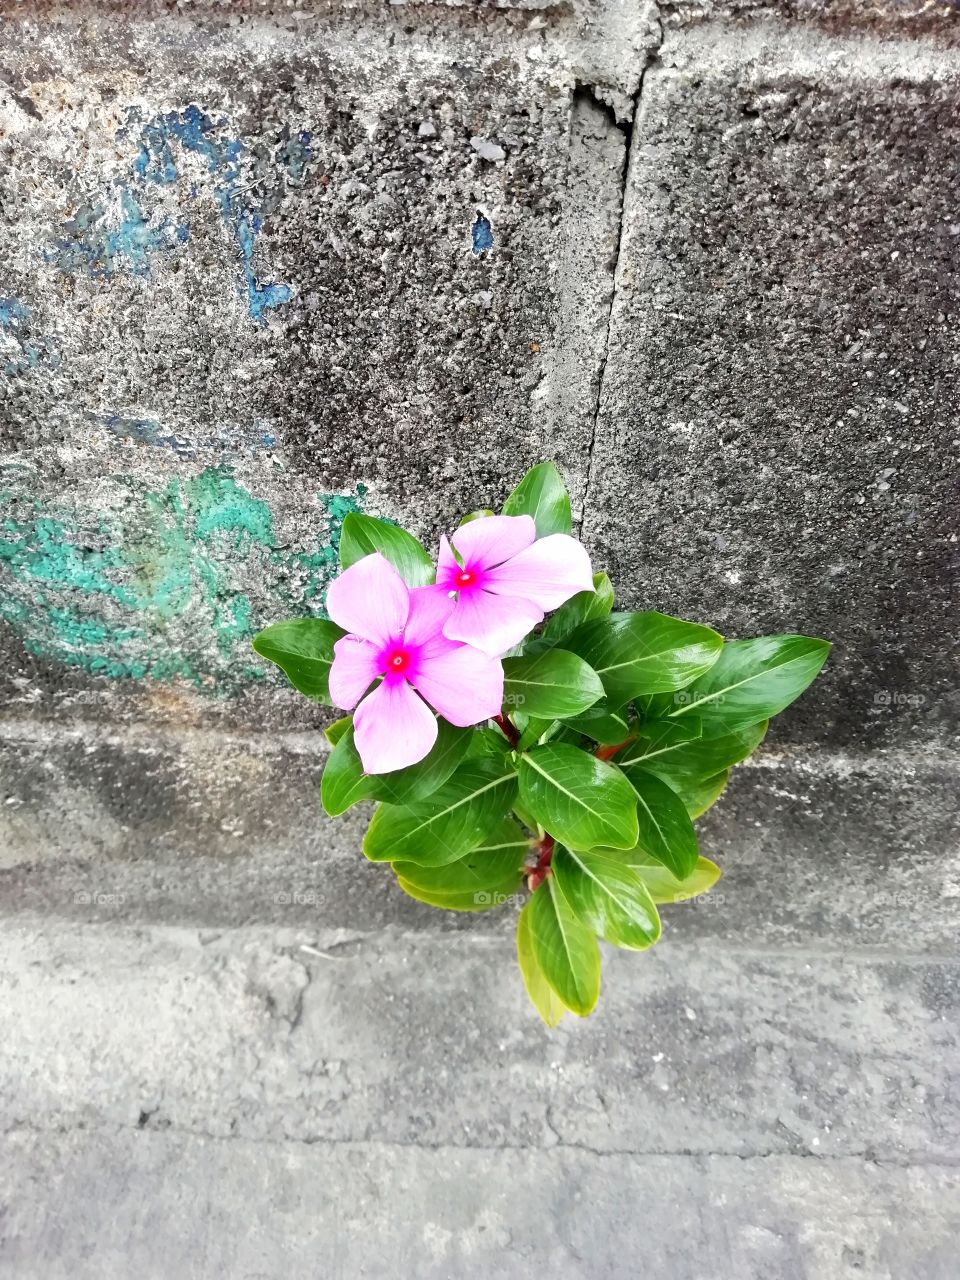 Flower against concrete